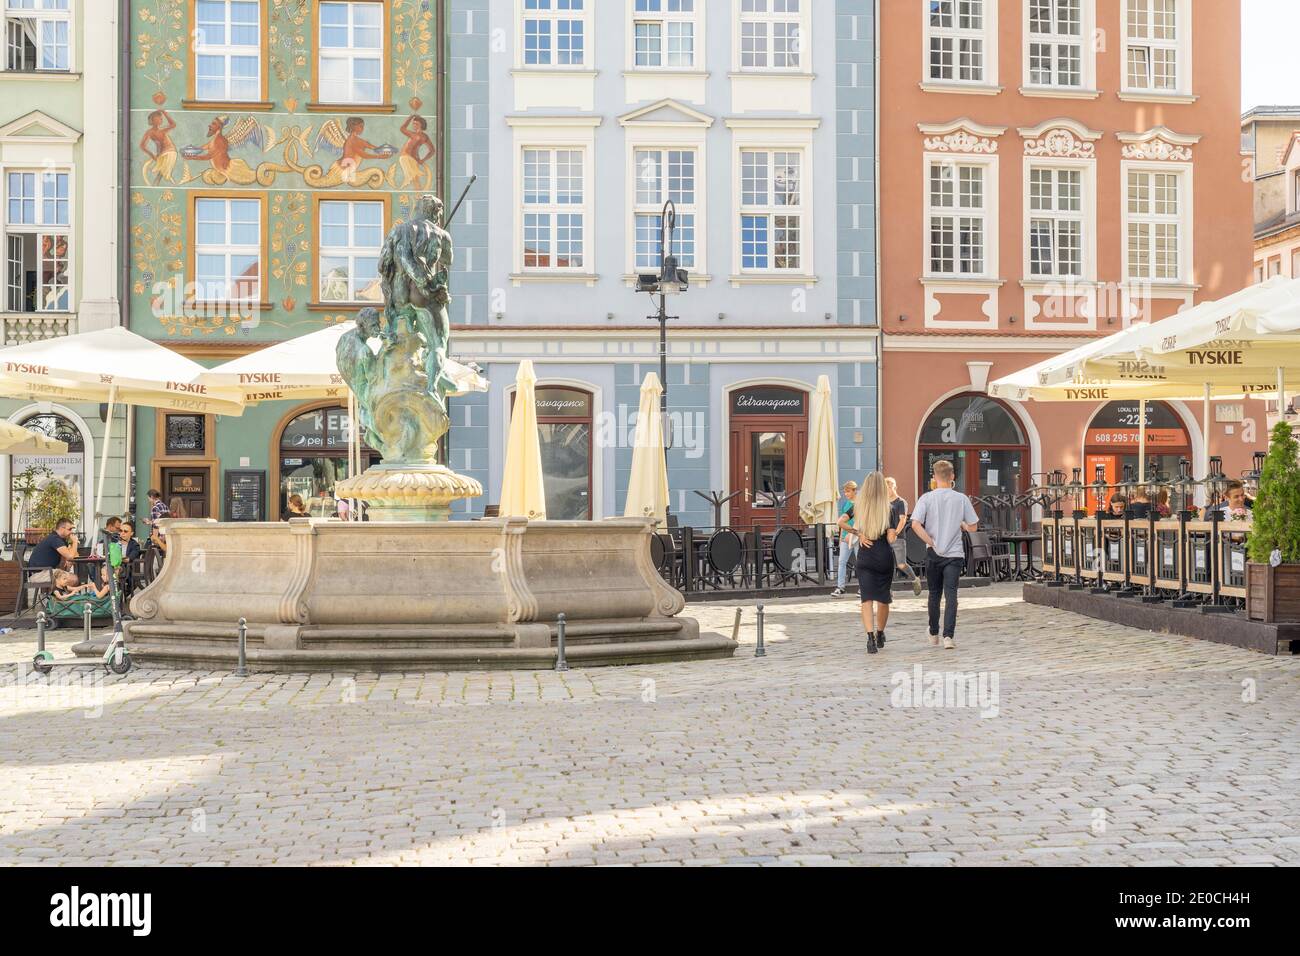 Fontaine de Neptune sur la place de la Vieille ville, Poznan, Pologne, Europe Banque D'Images